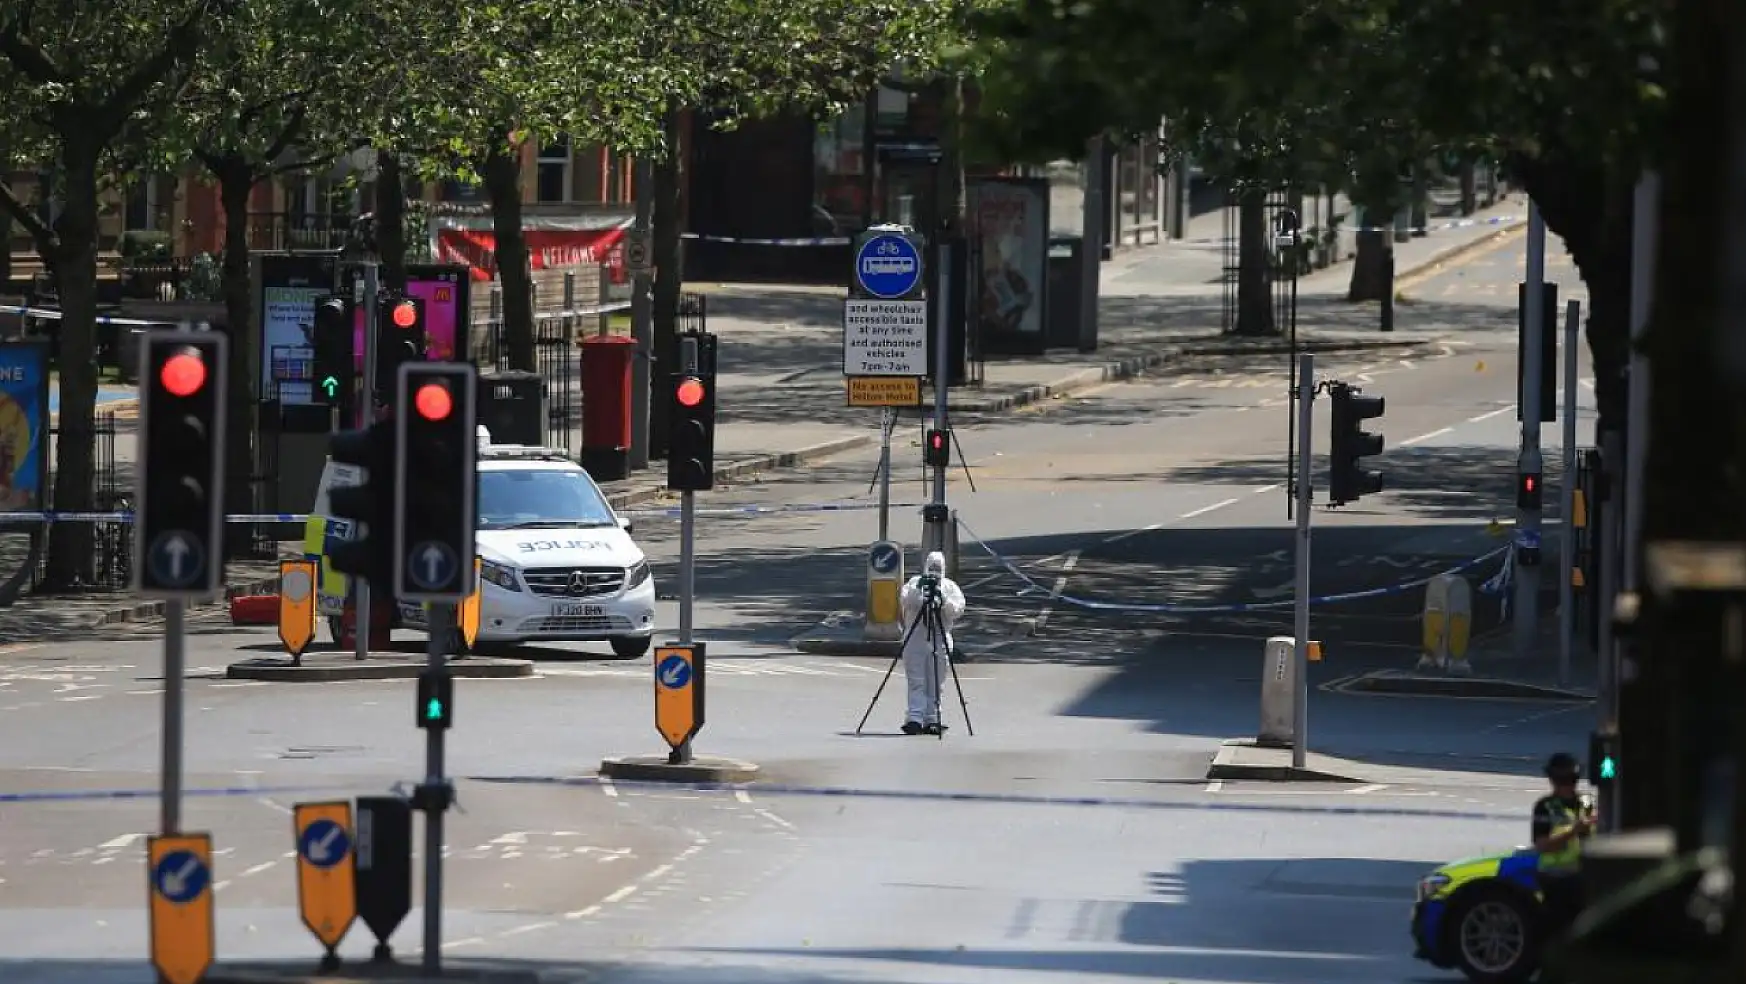 İngiltere sokakları hareketlendi… Halk gördükleri manzara karşısında ne yapacağını bilemedi